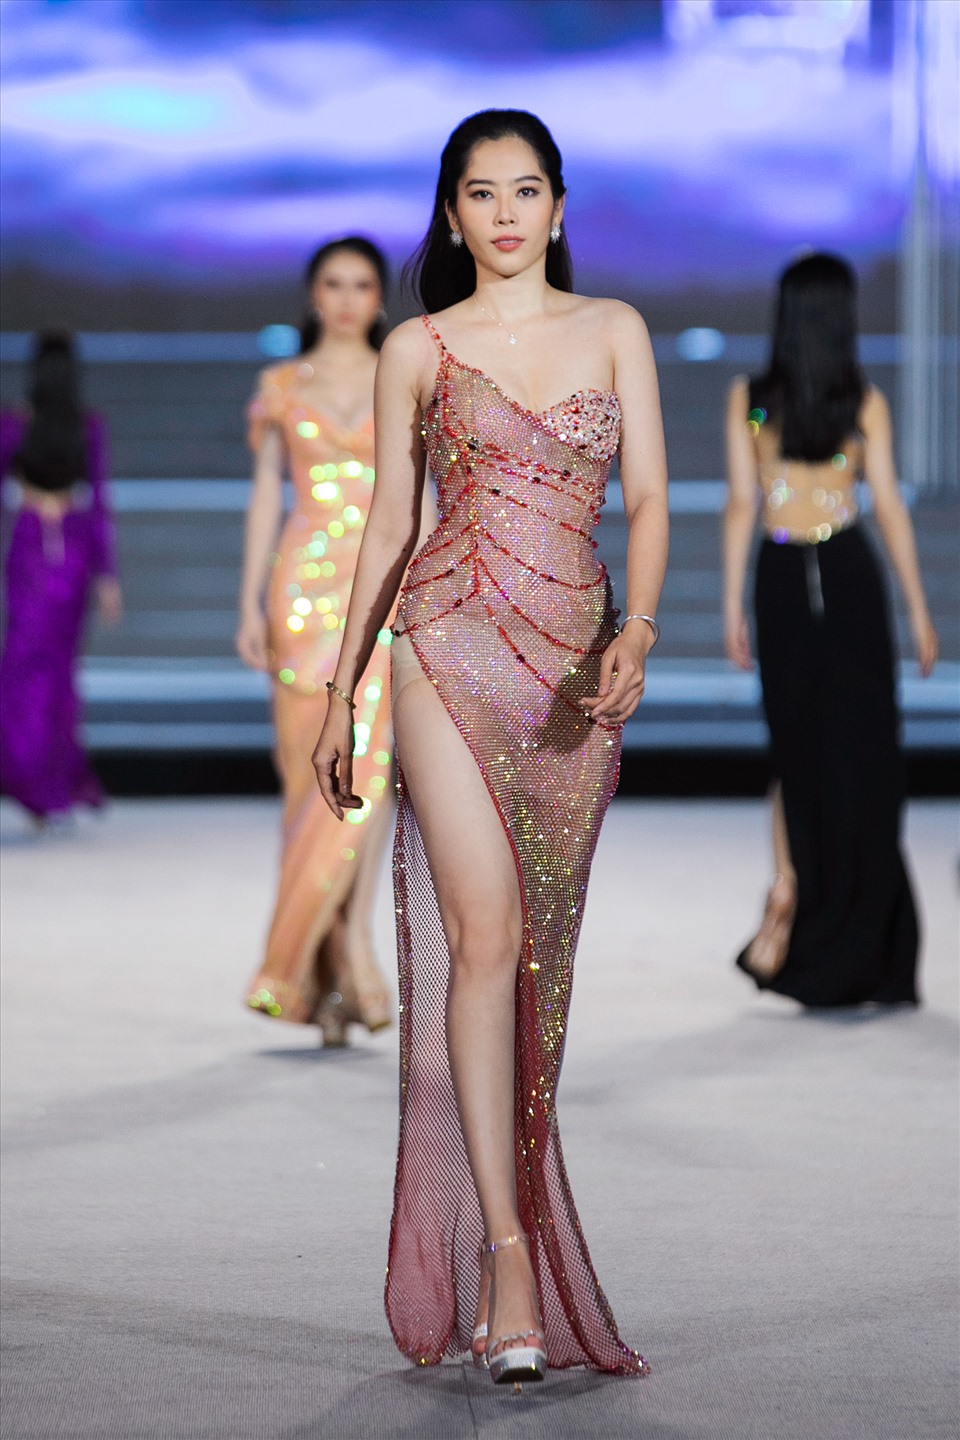 VietNam Beauty Fahion Fest do Tổng đạo diễn Hoàng Nhật Nam sáng lập lần đầu tiên được công bố và ra mắt tại chương trình Người đẹp thời trang – Miss World Việt Nam 2022. VietNam Beauty Fahion Fest là sự kết hợp giữa nhan sắc và thời trang được trình diễn bởi dàn hoa á hậu hàng đầu trong làng mốt Việt.